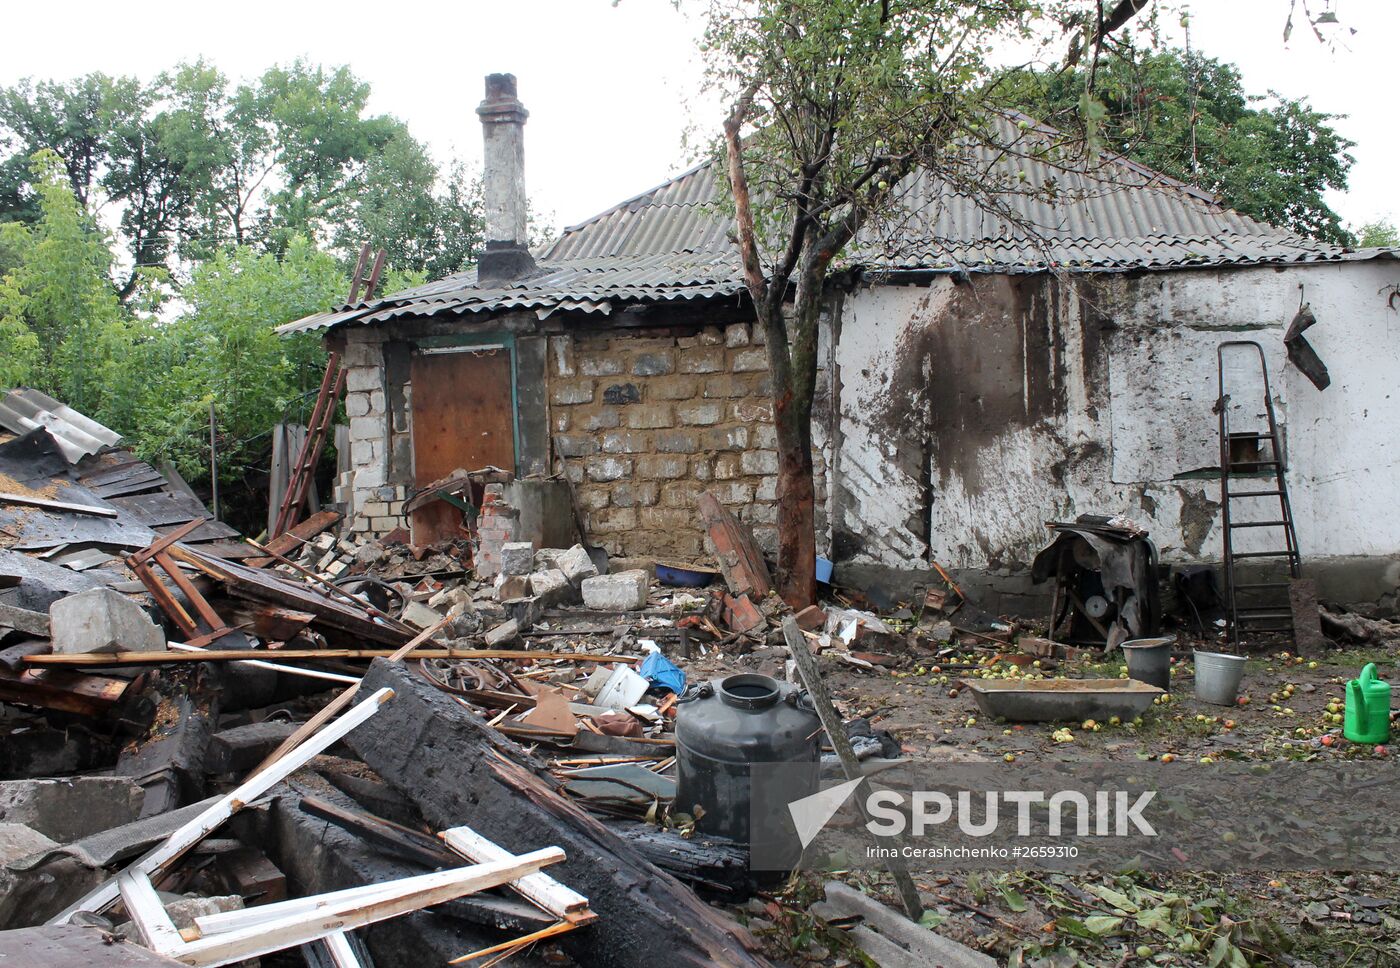 Aftermath of Gorlovka shelling, Donetsk region